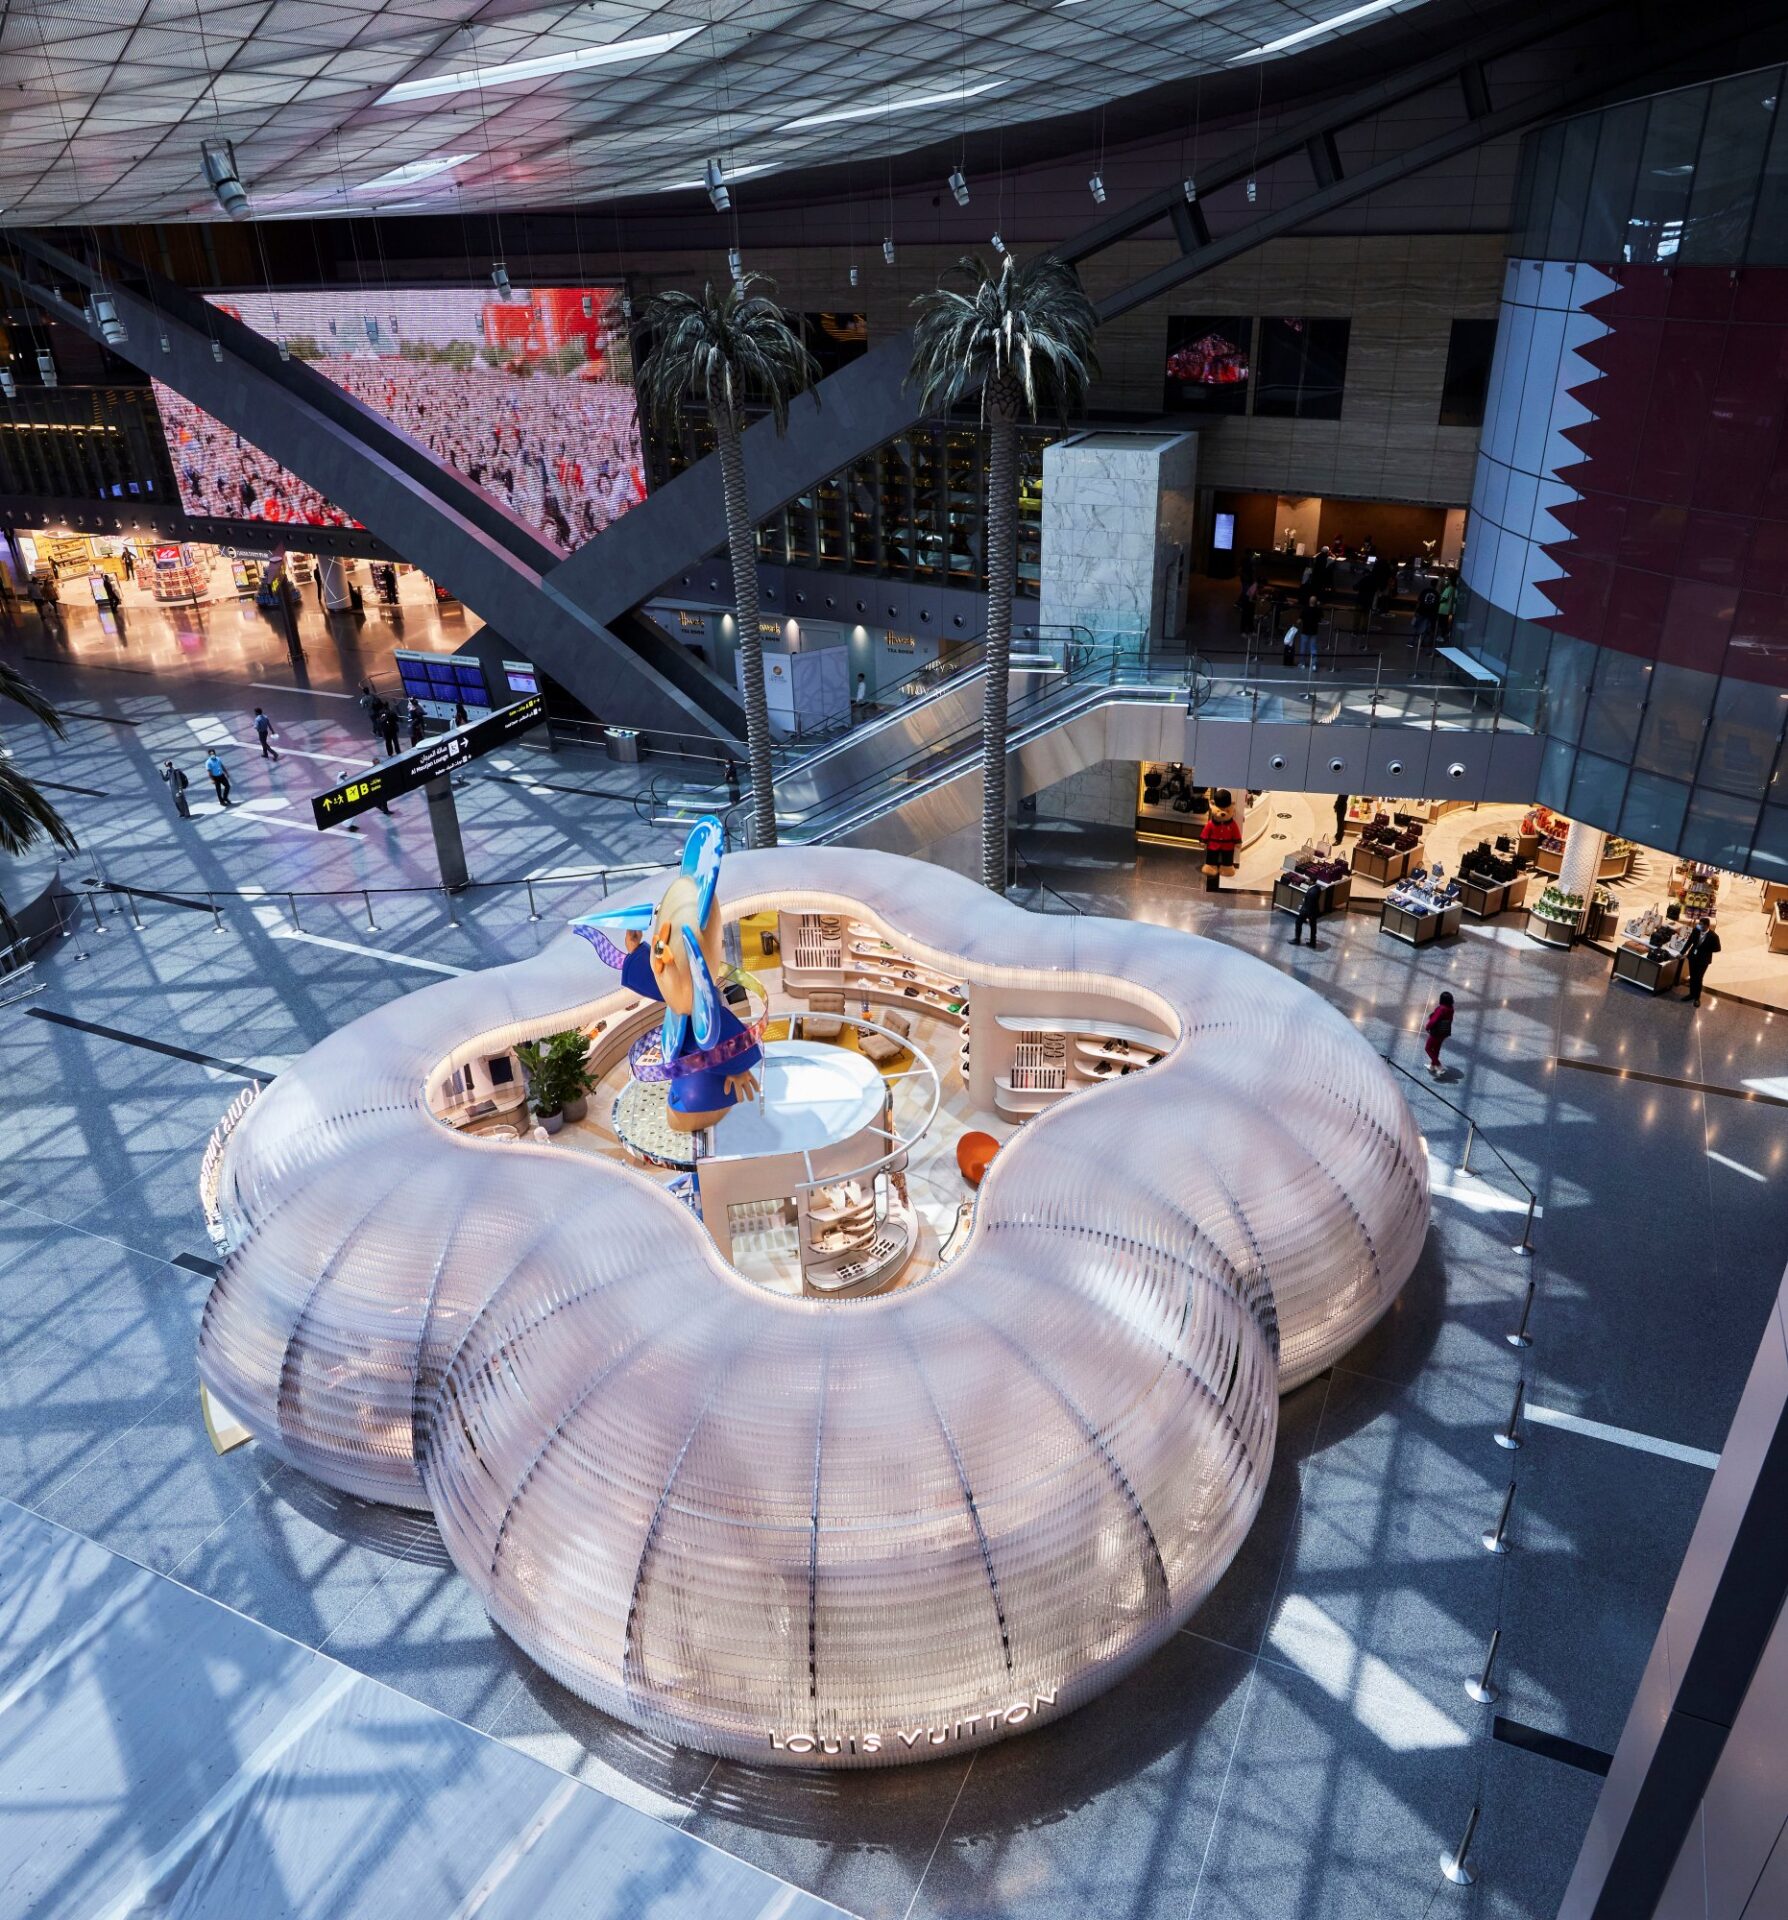 Doha: Louis Vuitton lounge opening